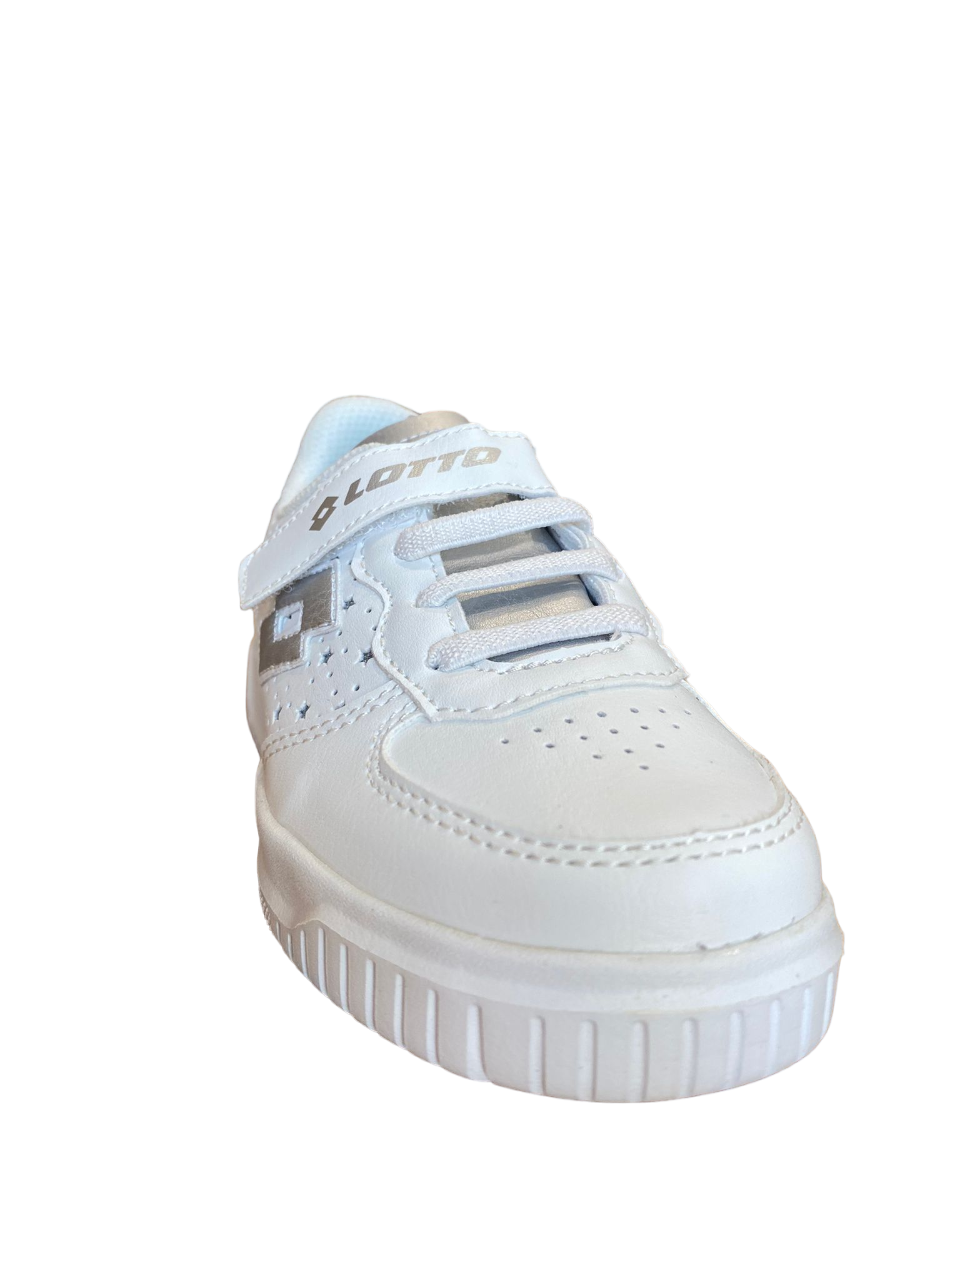 Lotto sneakers con strappo da bambina Venus 1 AMF 219415 1VQ white-silver metal 2